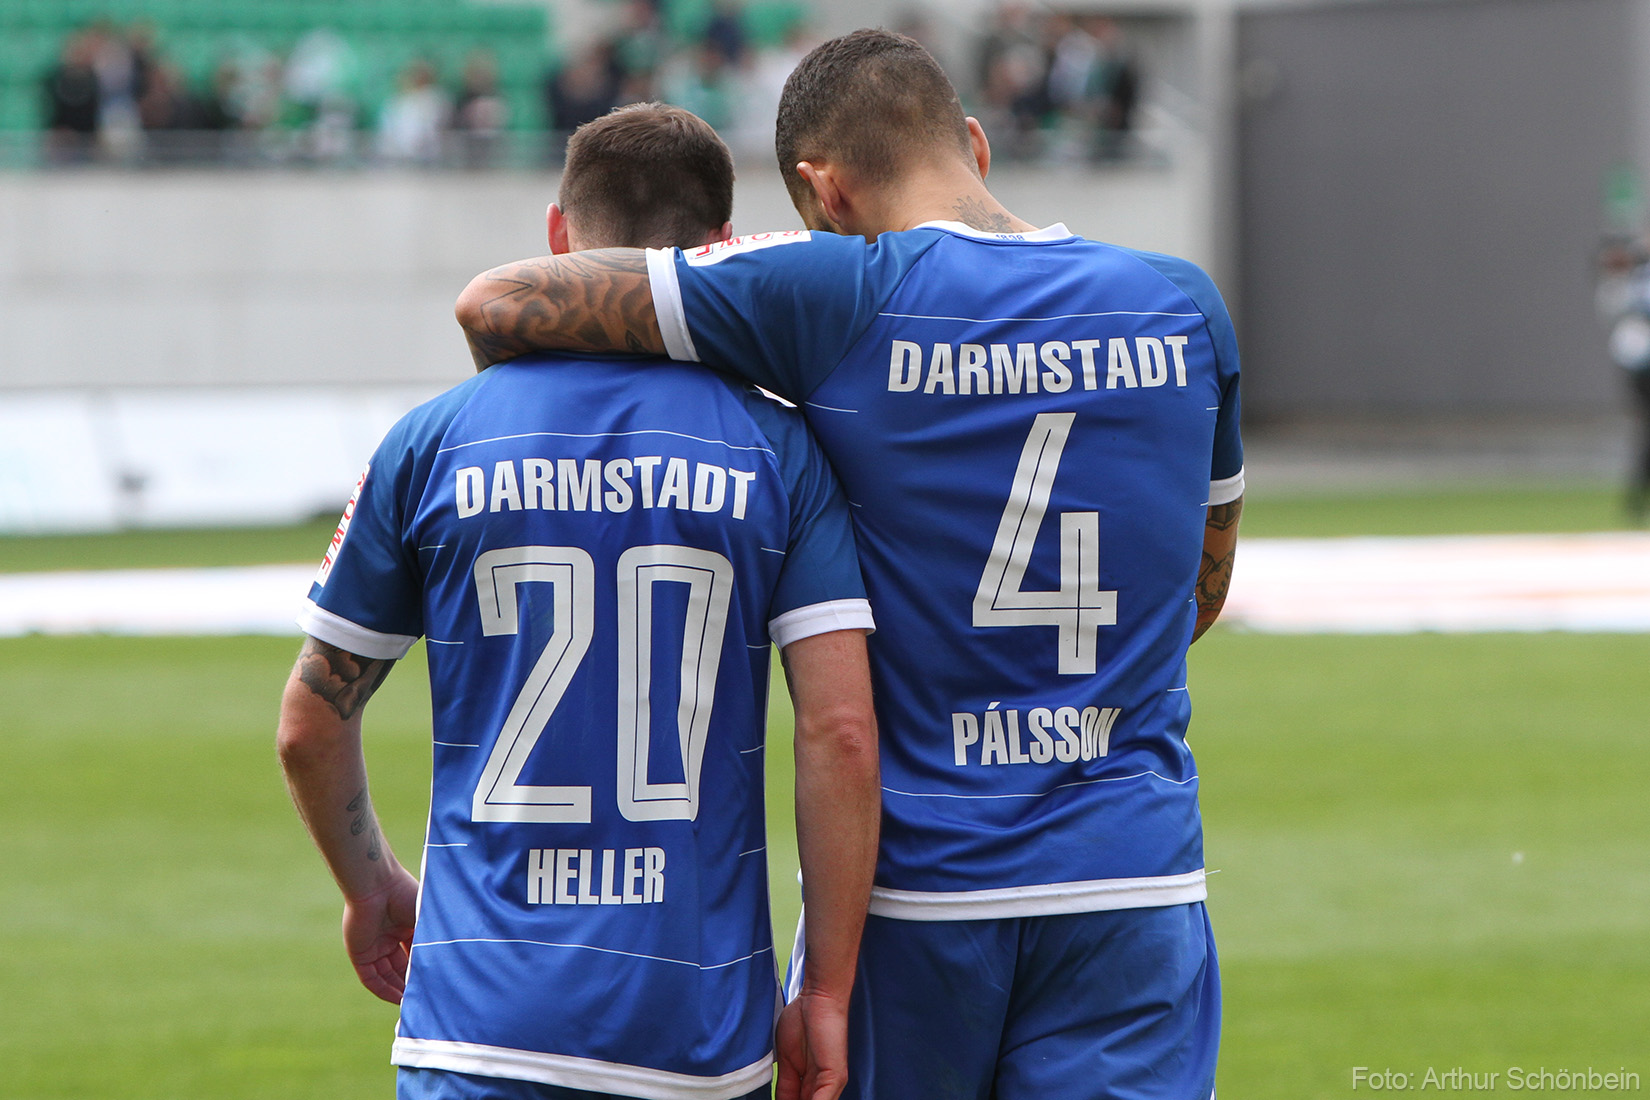 SpVgg Greuther Fürth – SV Darmstadt 98 2:1 (0:0)